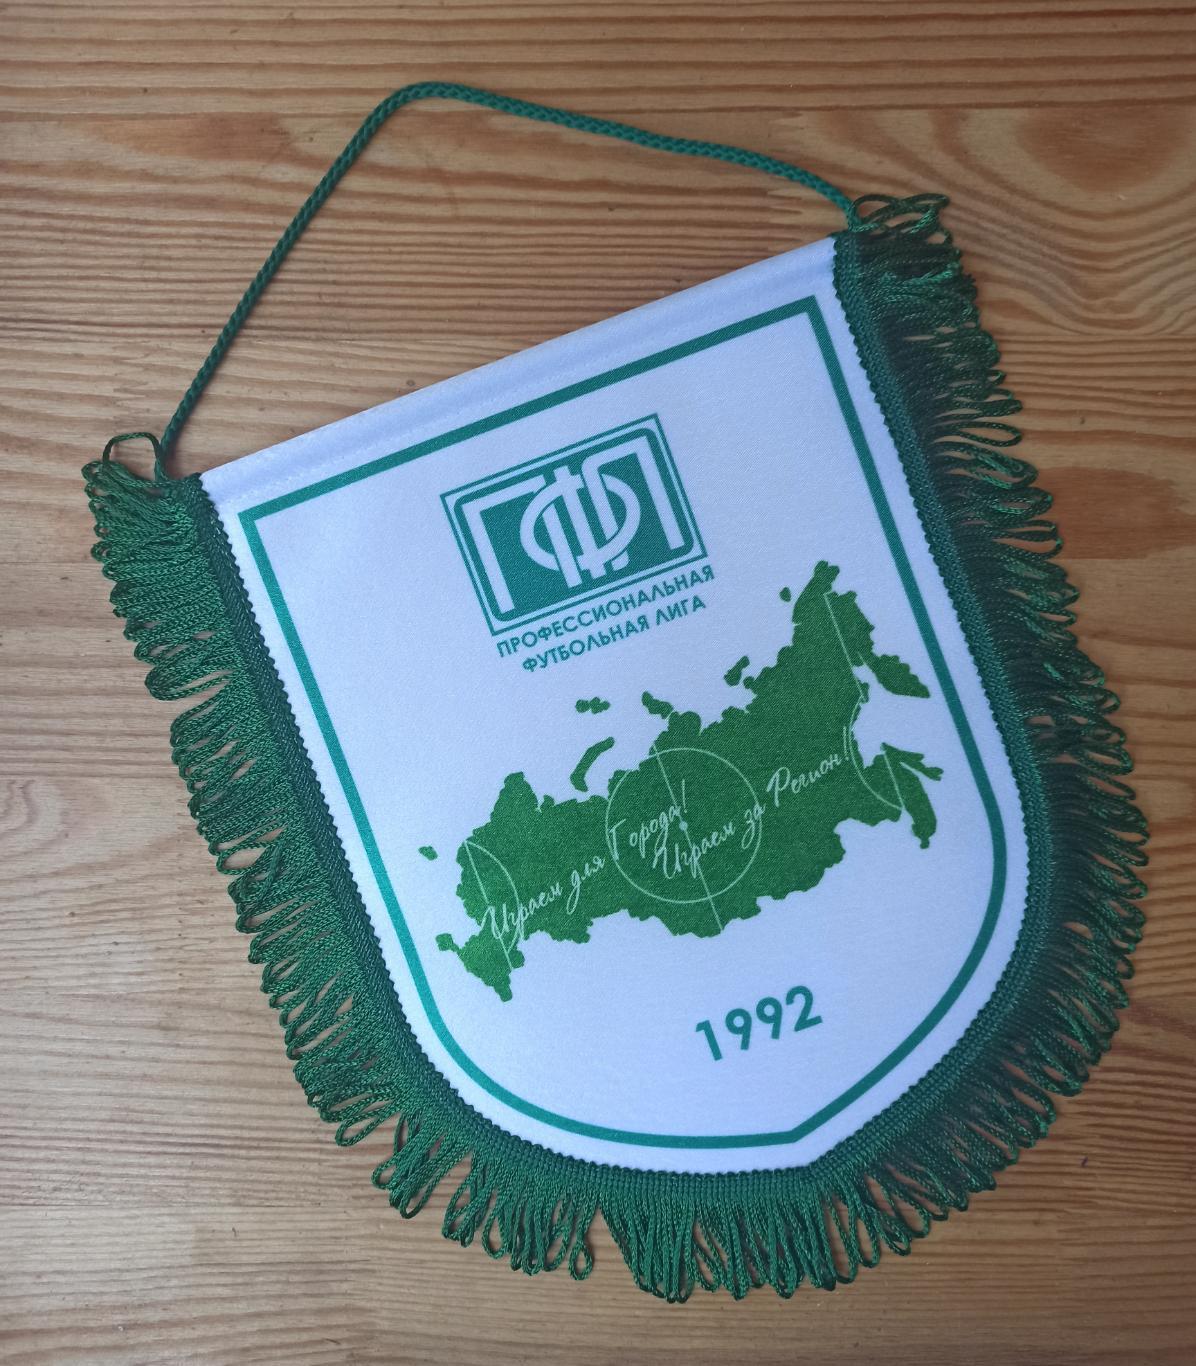 Вымпел Профессиональной Футбольной Лиги (ПФЛ) Россия 1992г.